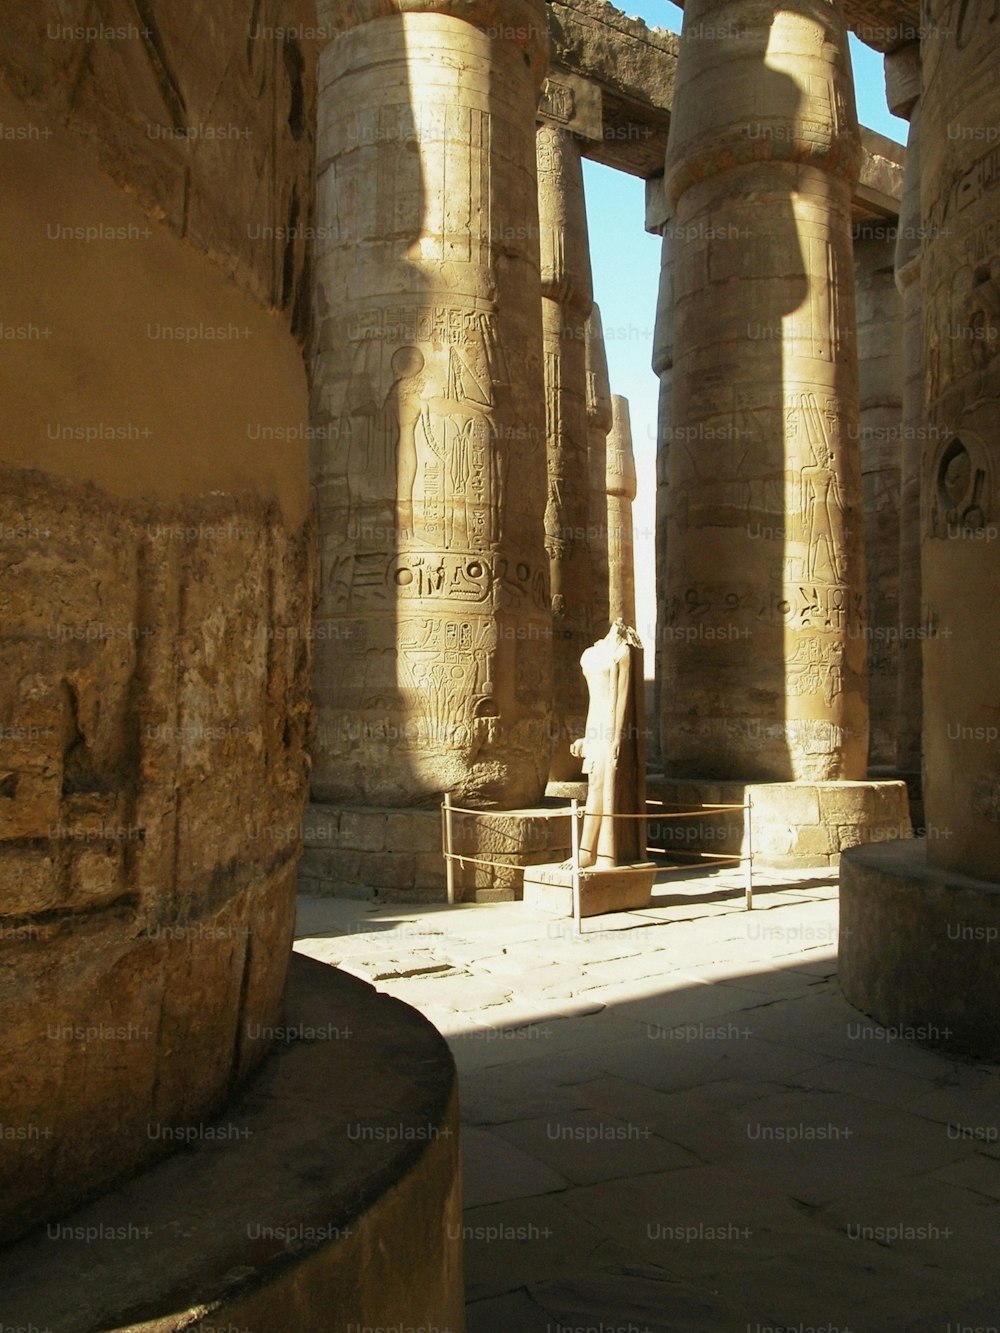 두 개의 큰 기둥 사이에 서있는 남자의 동상